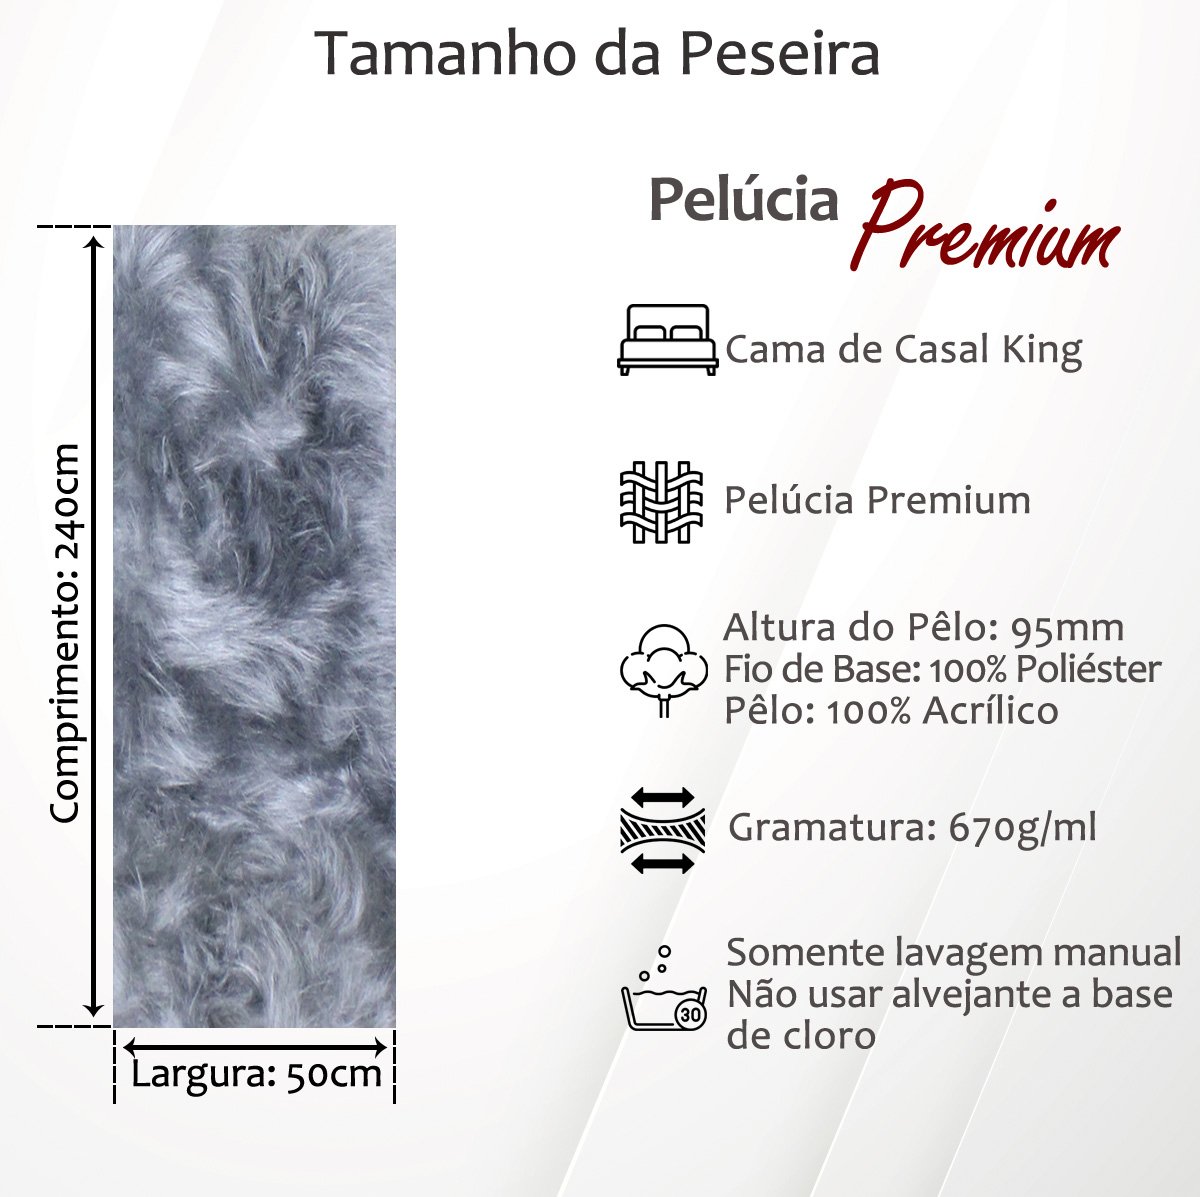 Peseira Premium Pelúcia Pelo Alto Cama Casal King Size 2,4mx50cm + 2 Capas de Almofadas Pelúcia Prem - 4